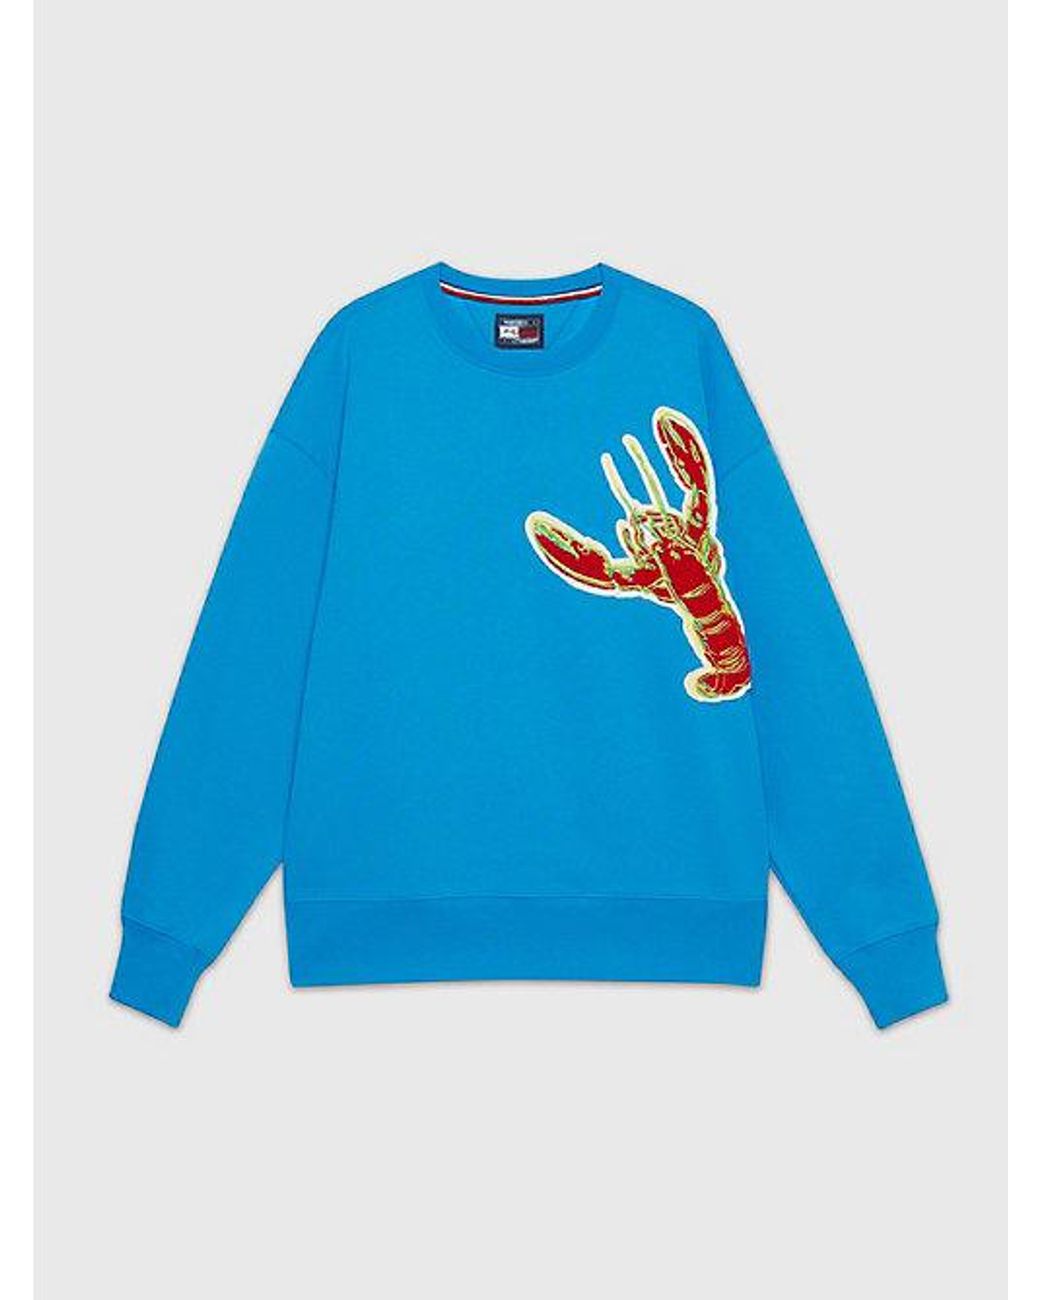 Hummer-Print Lyst Sweatshirt in für mit Herren Blau X Tommy Warhol DE | Hilfiger Andy